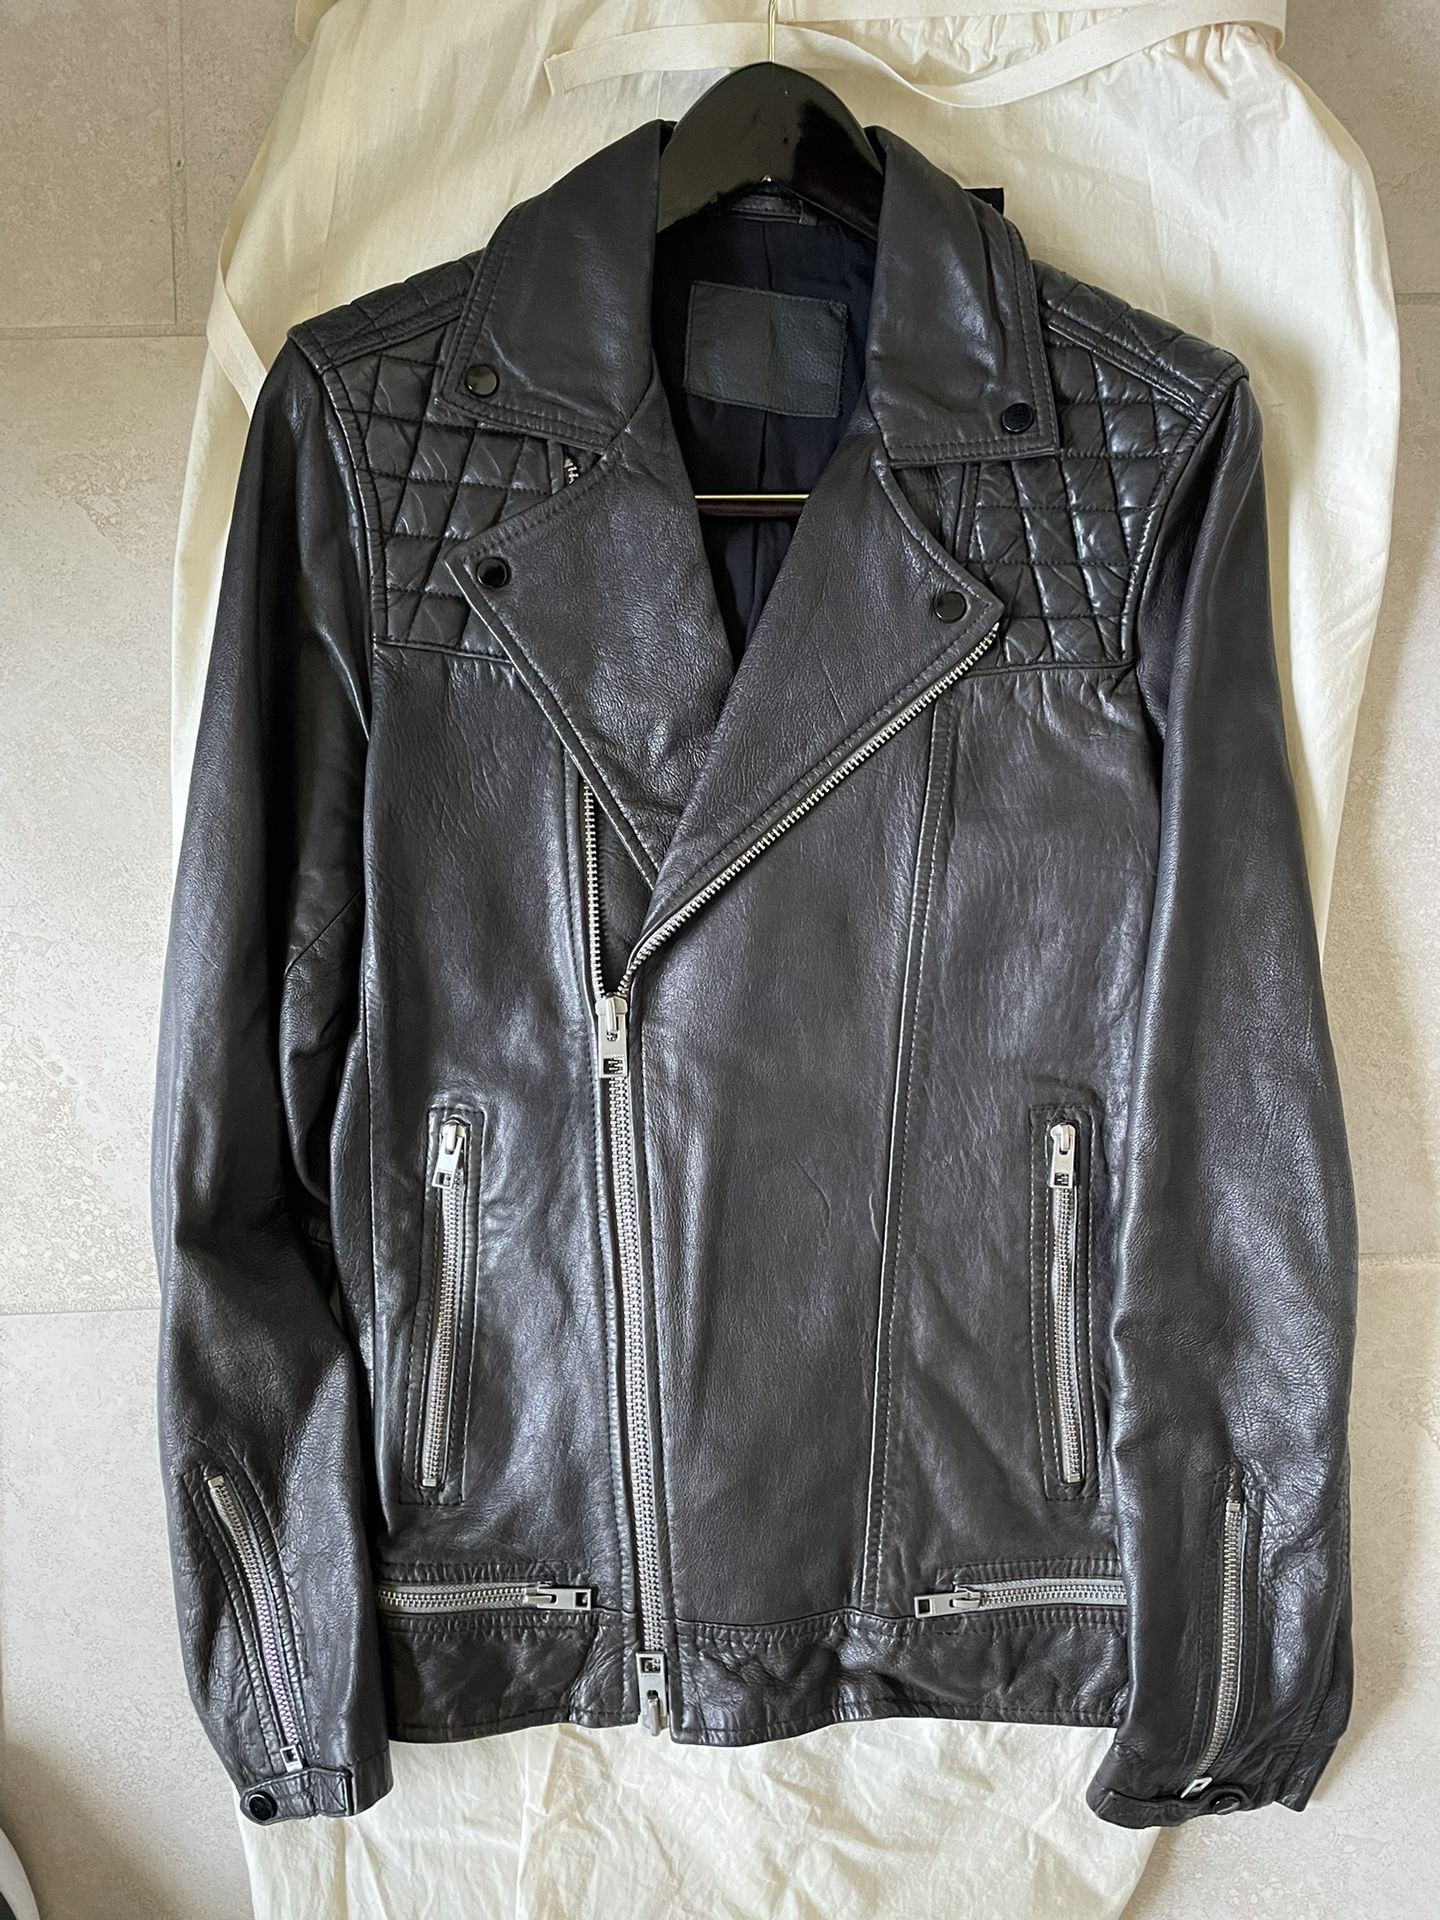 All Saints Black Leather Jacket - Medium 